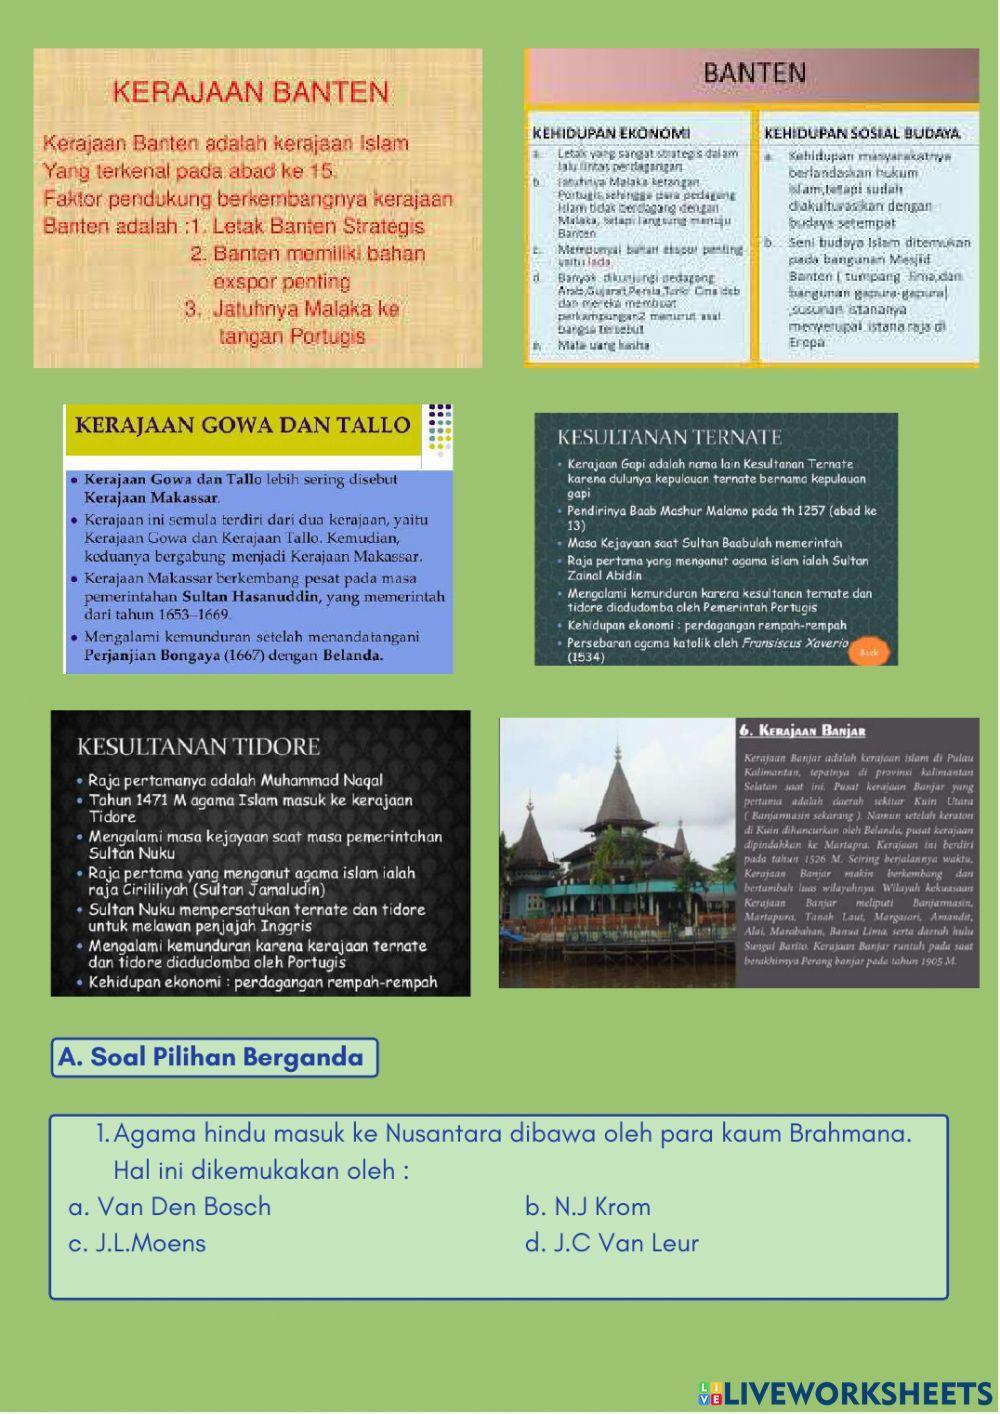 Sejarah Kerajaan Kerajaan Besar di Indonesia pada masa Hindu-Buddha dan Islam